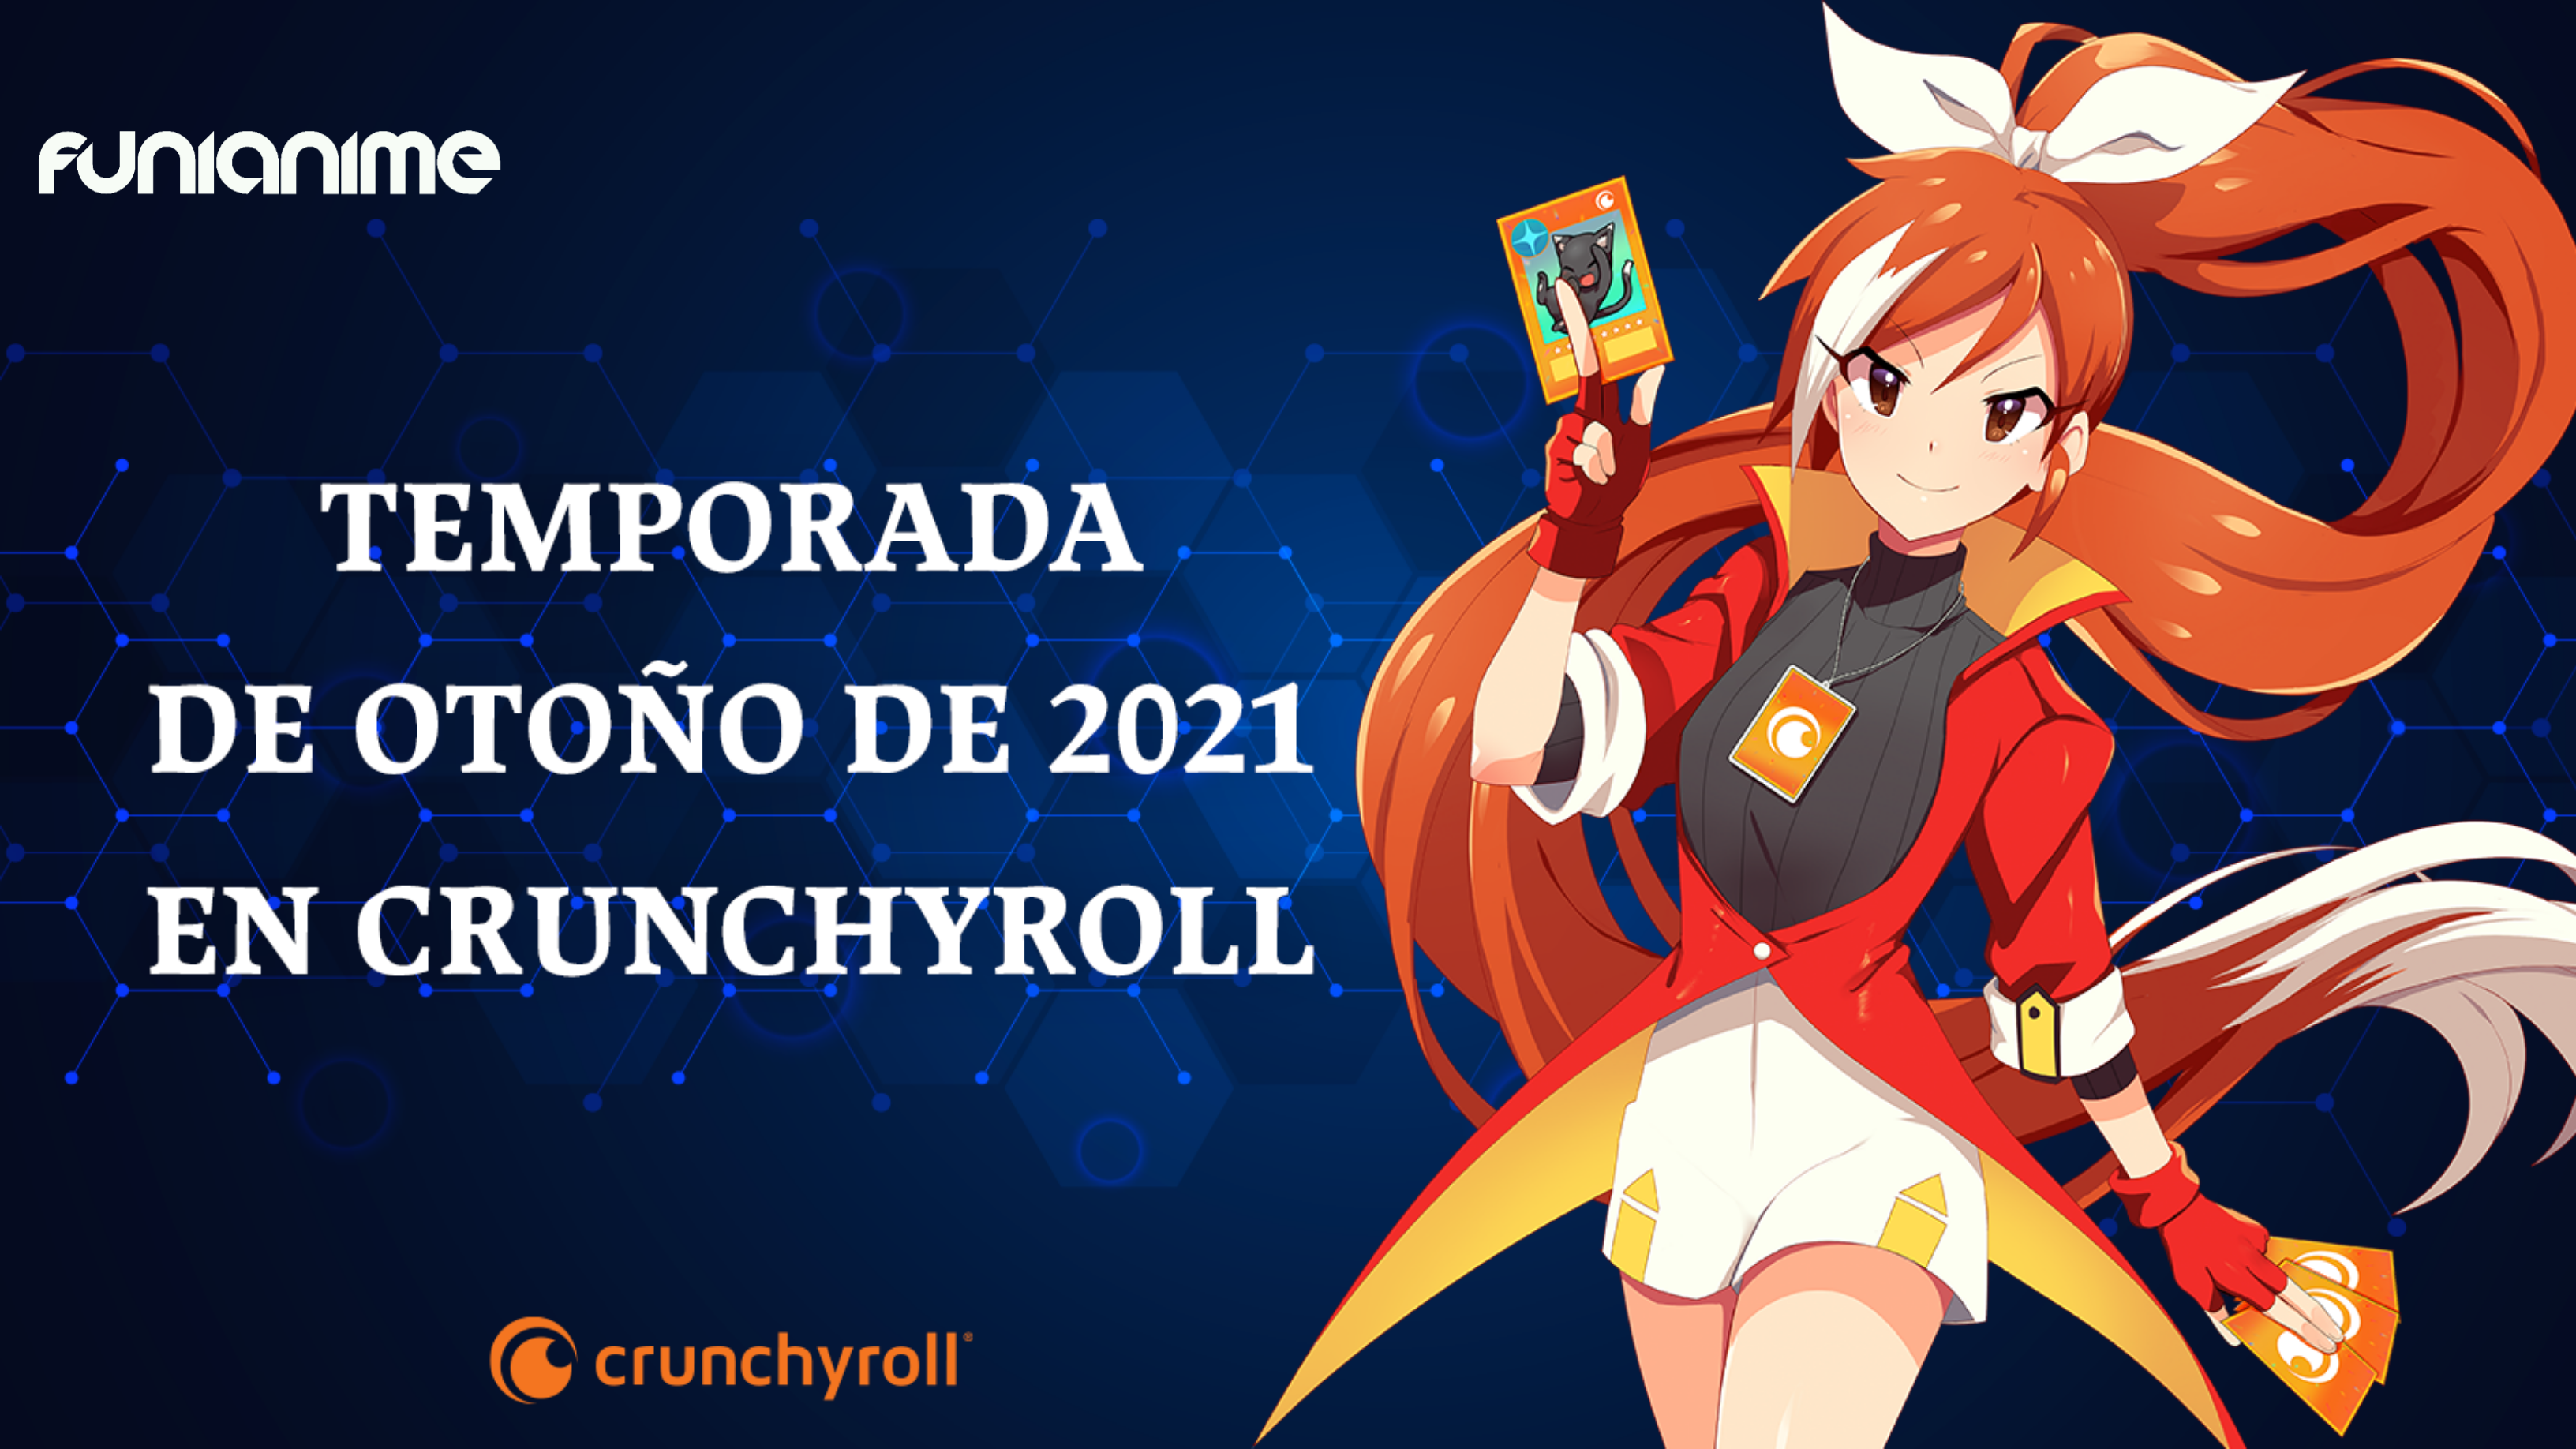 El anime original Miru Tights fecha su estreno - Crunchyroll Noticias